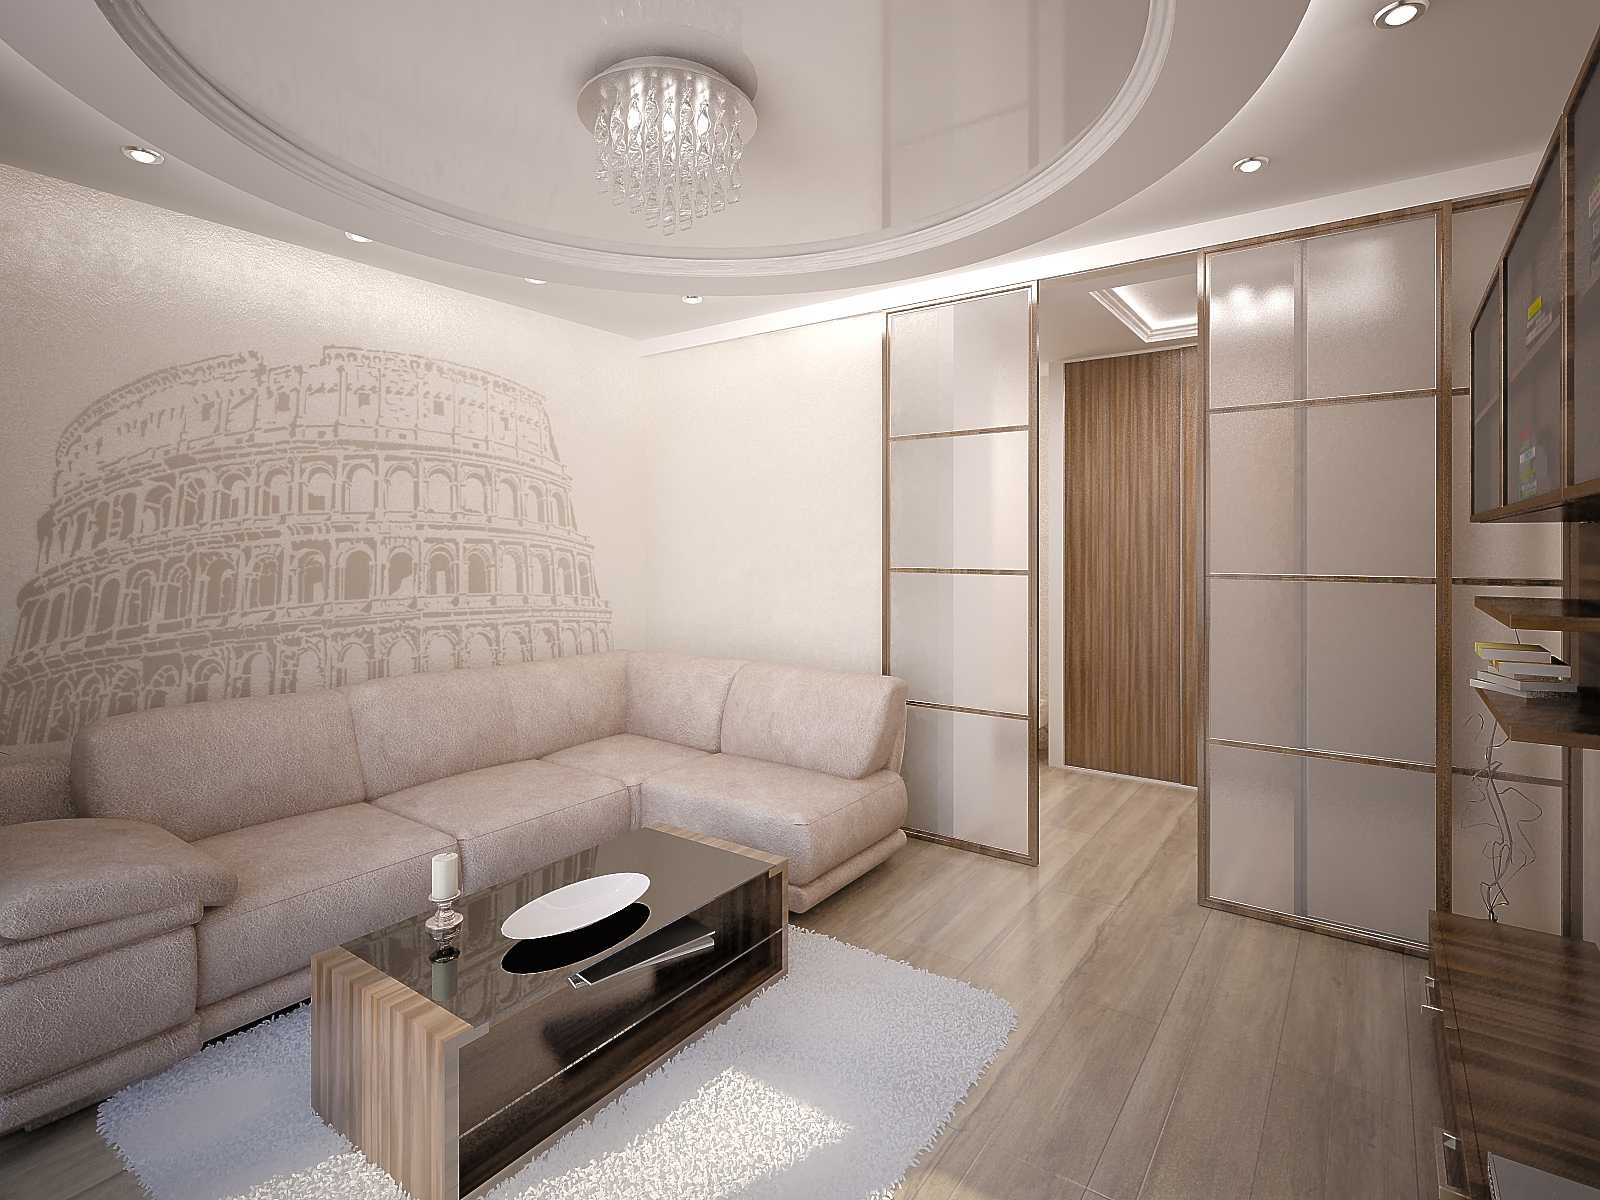 Дизайн зала площадью 18 кв. м в квартире (90 фото): интерьер гостиной комнаты прямоугольной формы размером 18 квадратов